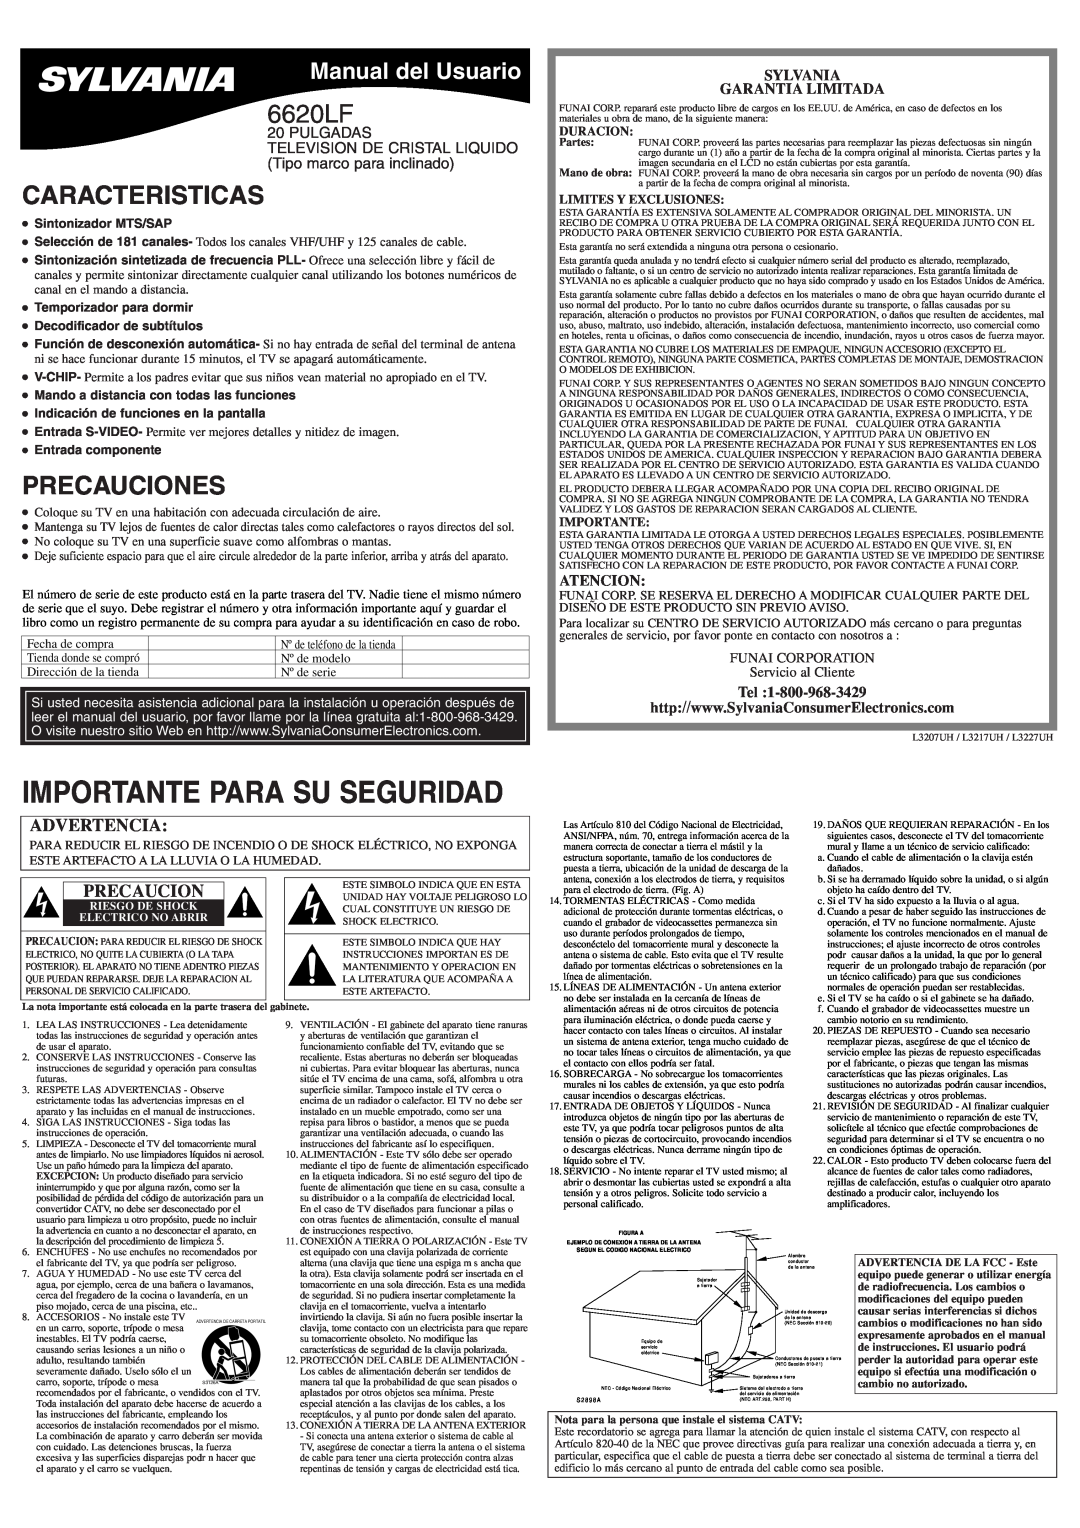 Sylvania 6620LF Caracteristicas, Precauciones, Manual del Usuario, Sylvania Garantia Limitada, Atencion, Duracion 